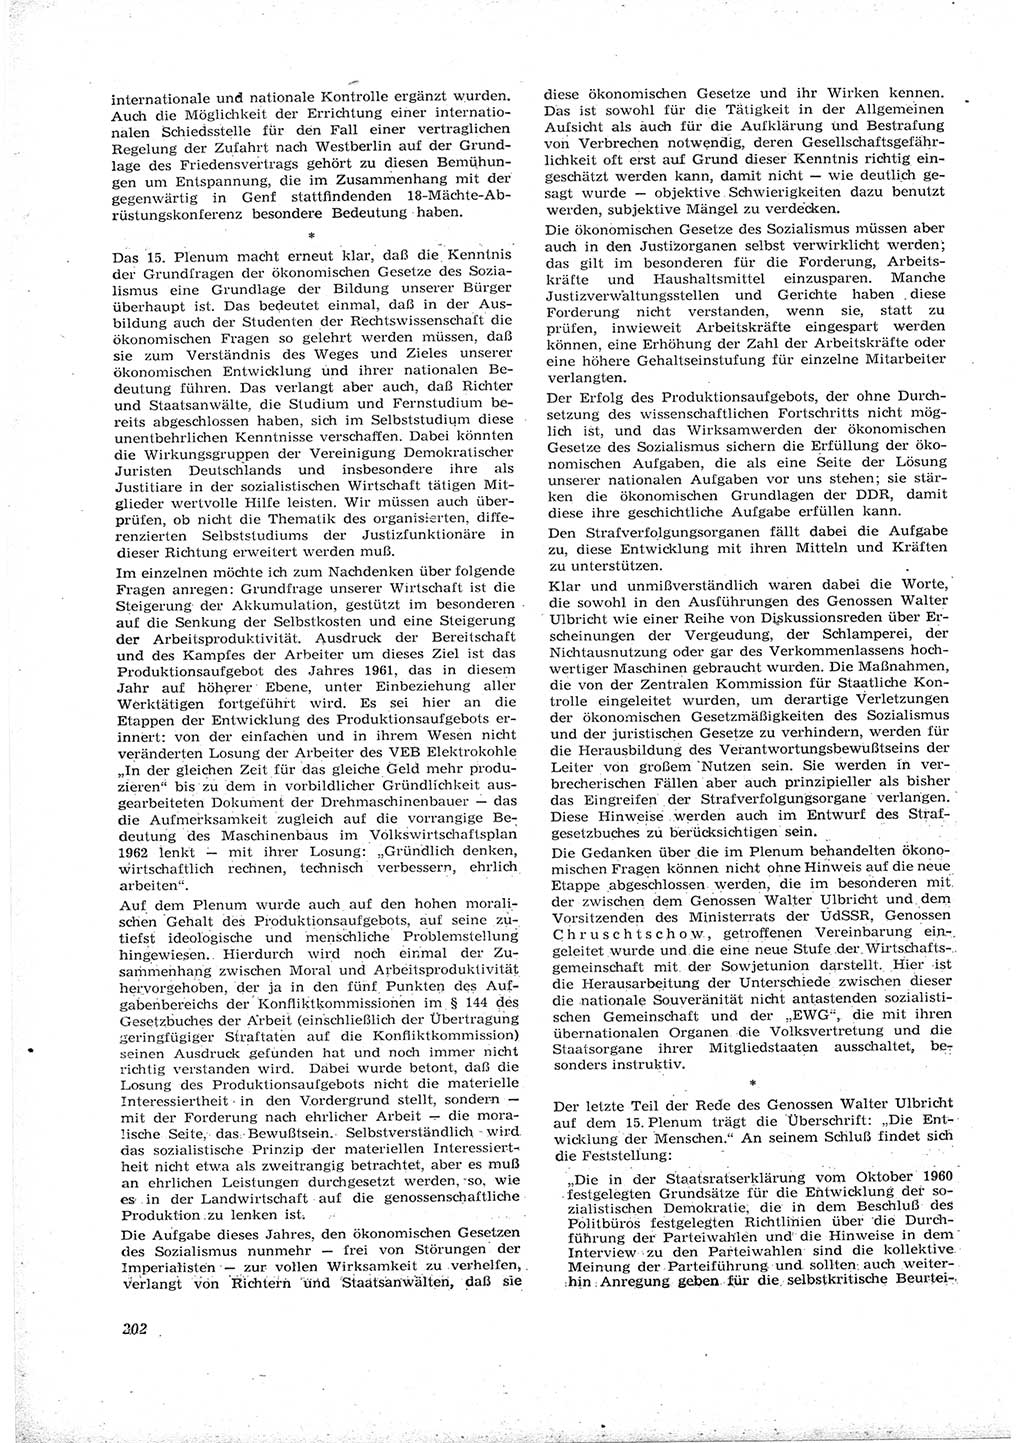 Neue Justiz (NJ), Zeitschrift für Recht und Rechtswissenschaft [Deutsche Demokratische Republik (DDR)], 16. Jahrgang 1962, Seite 202 (NJ DDR 1962, S. 202)